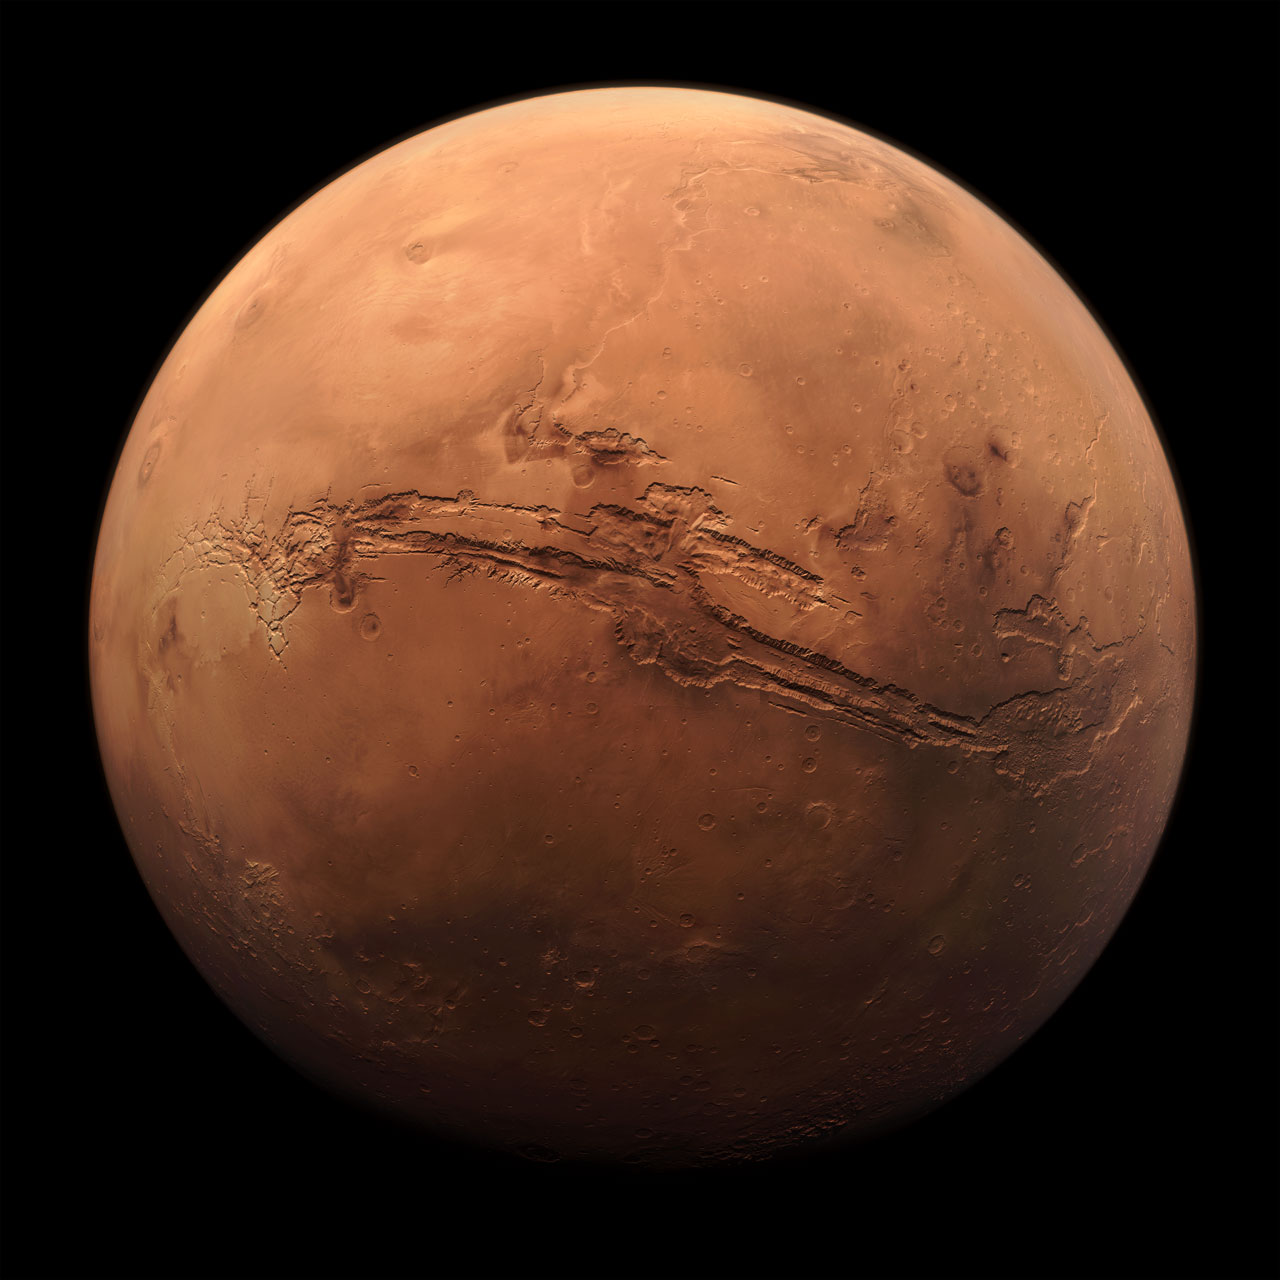 मंगल ग्रह की समग्र छवि इसकी अधिकांश सतह पर फैली विशाल घाटी को दिखाती है।